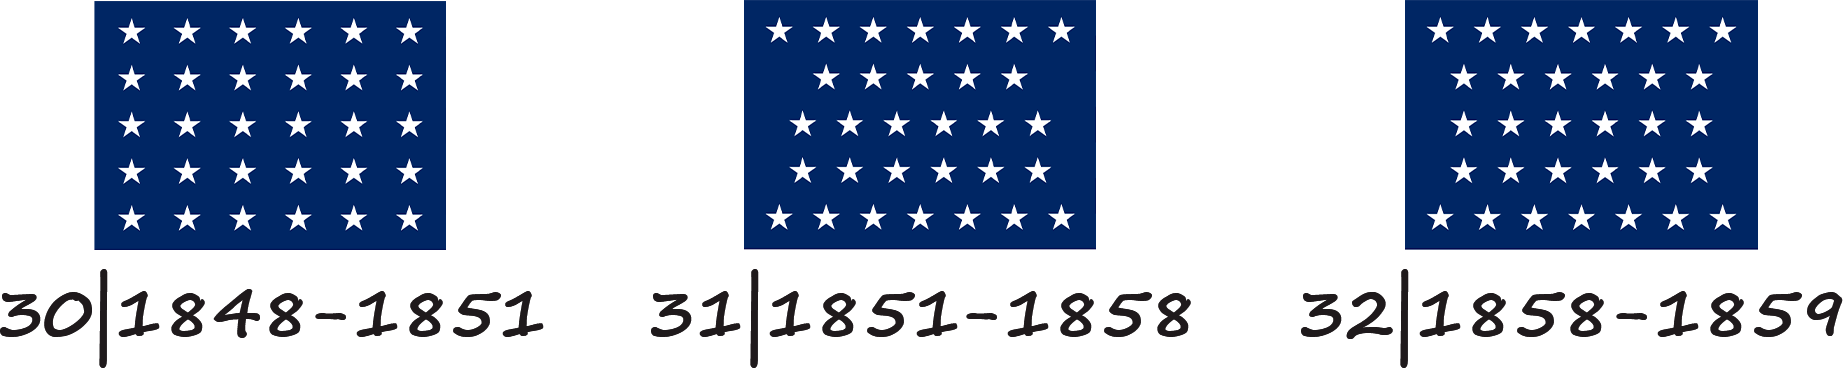 Bandera de los Estados Unidos de América con 30, 31 y 32 estrellas